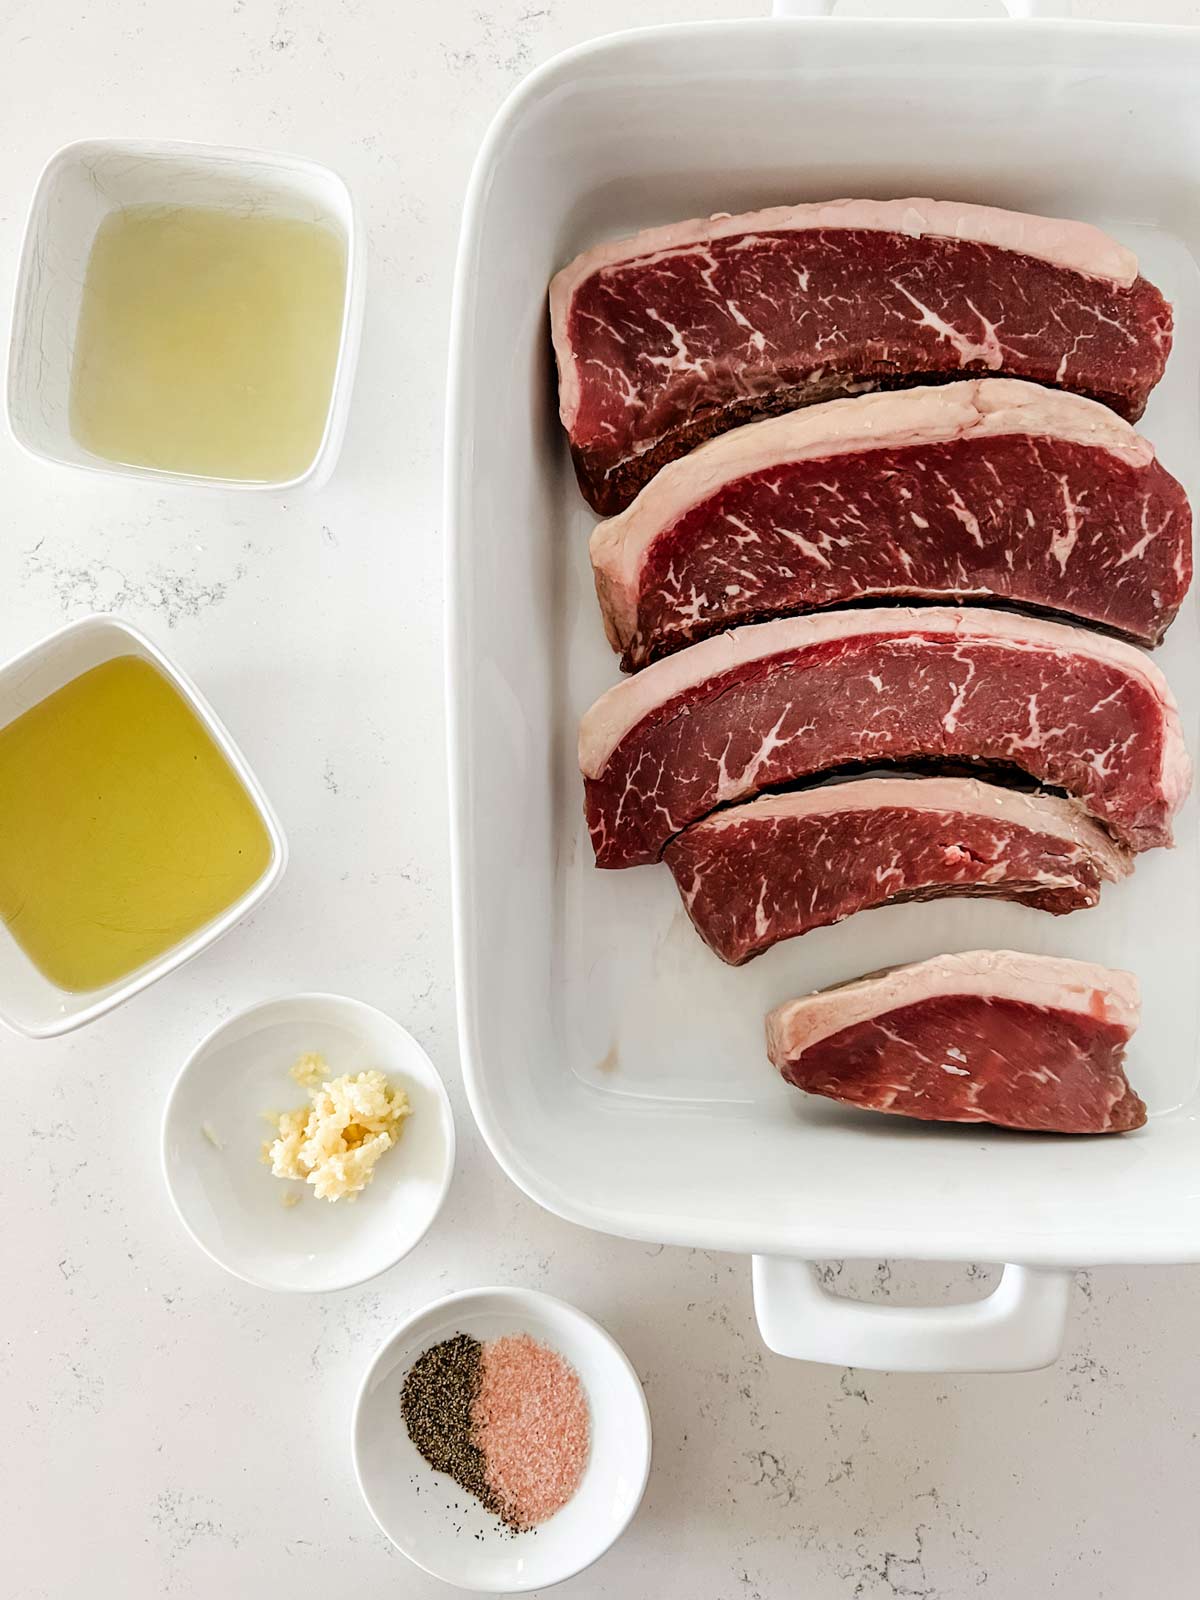 Overhead photo of picanha steaks, oil, lemon juice, garlic, and seasonings.